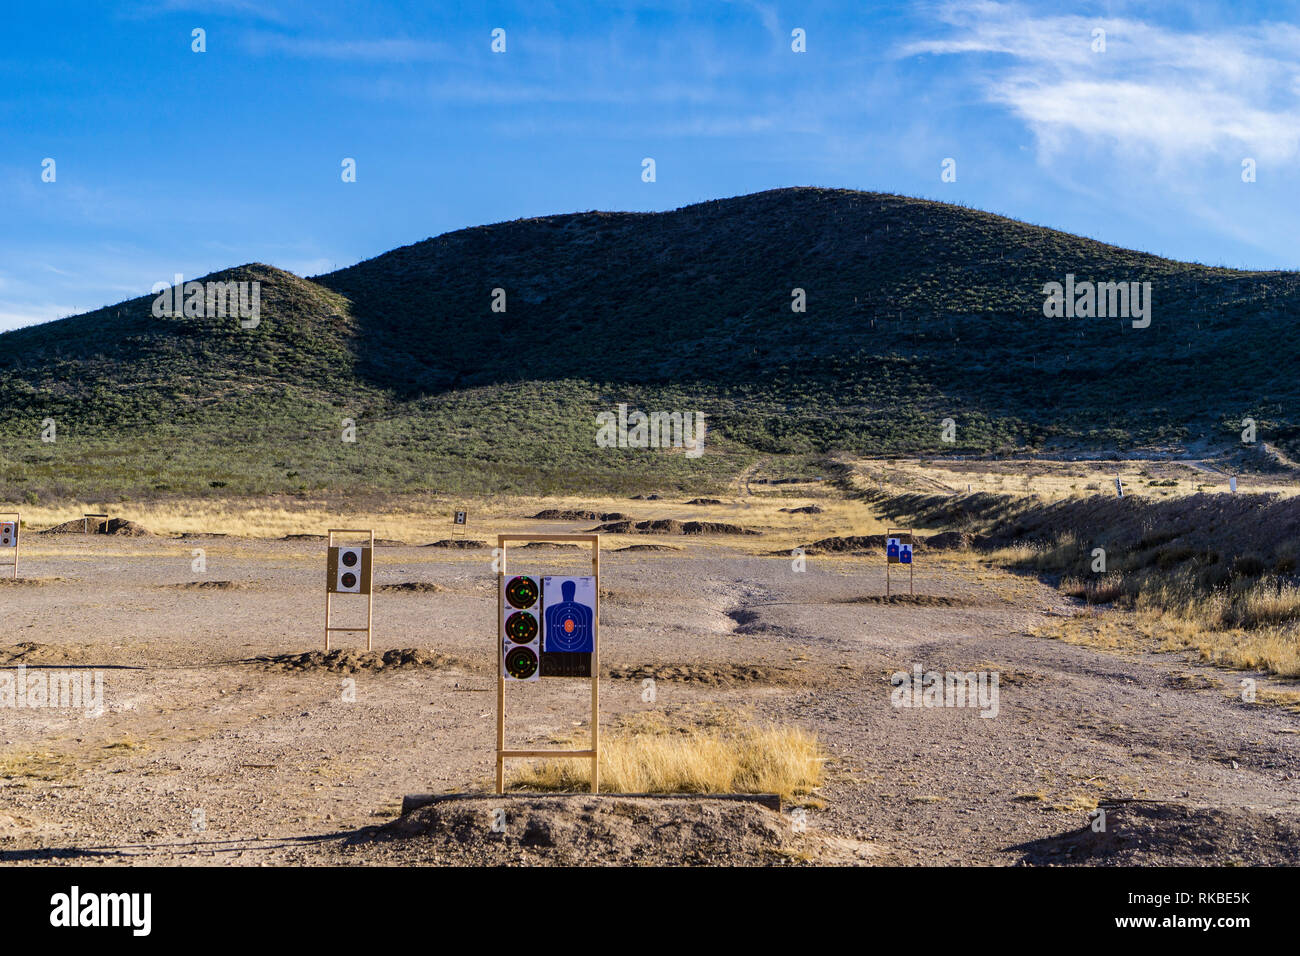 Sierra Vista shooting range in the desert. Stock Photo